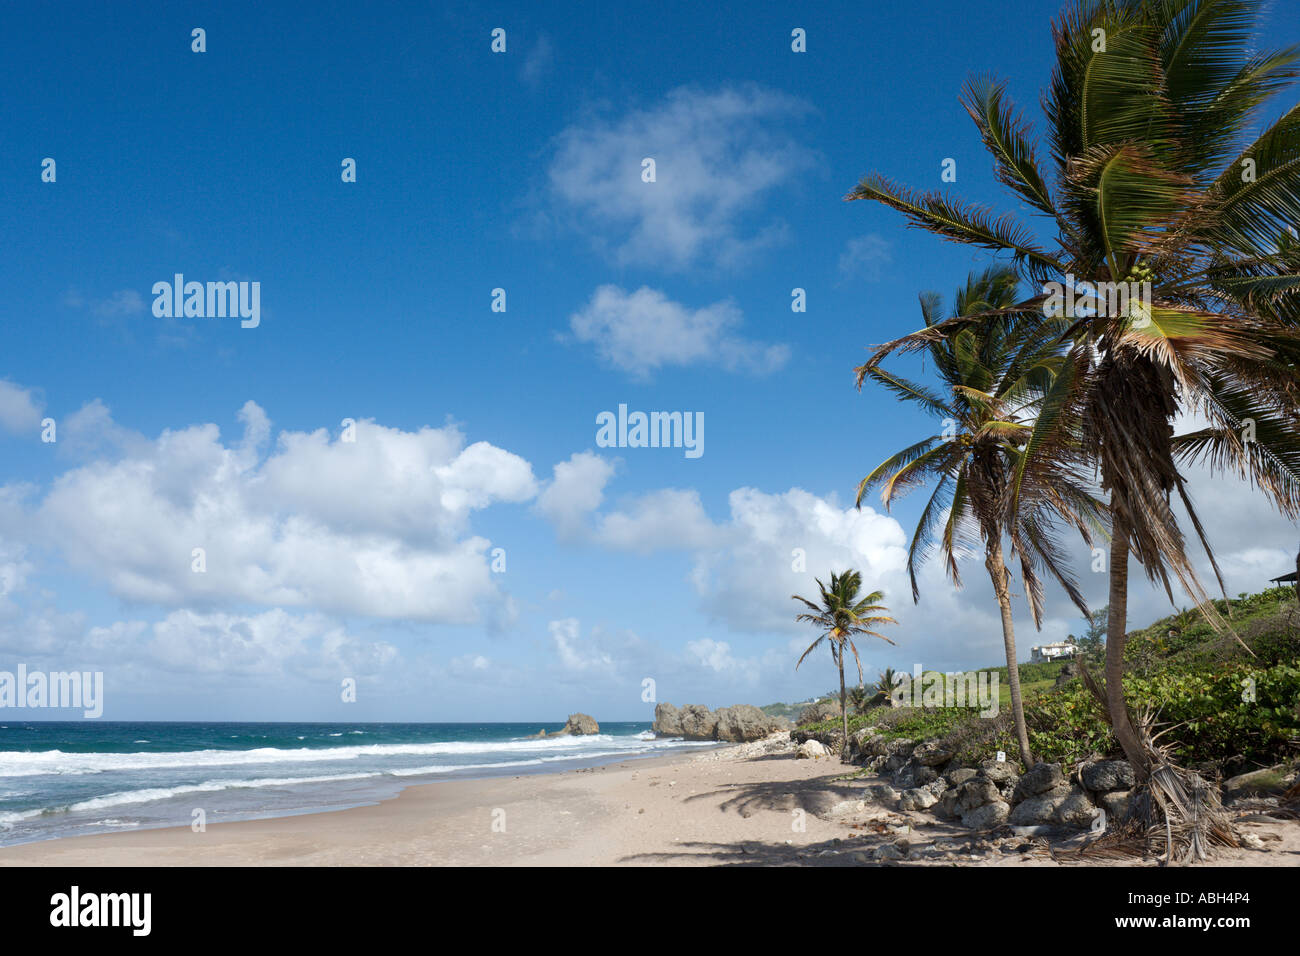 Cerca de la Costa Este parque de Barclays, Barbados, Antillas Menores, Las Antillas, Caribe Foto de stock